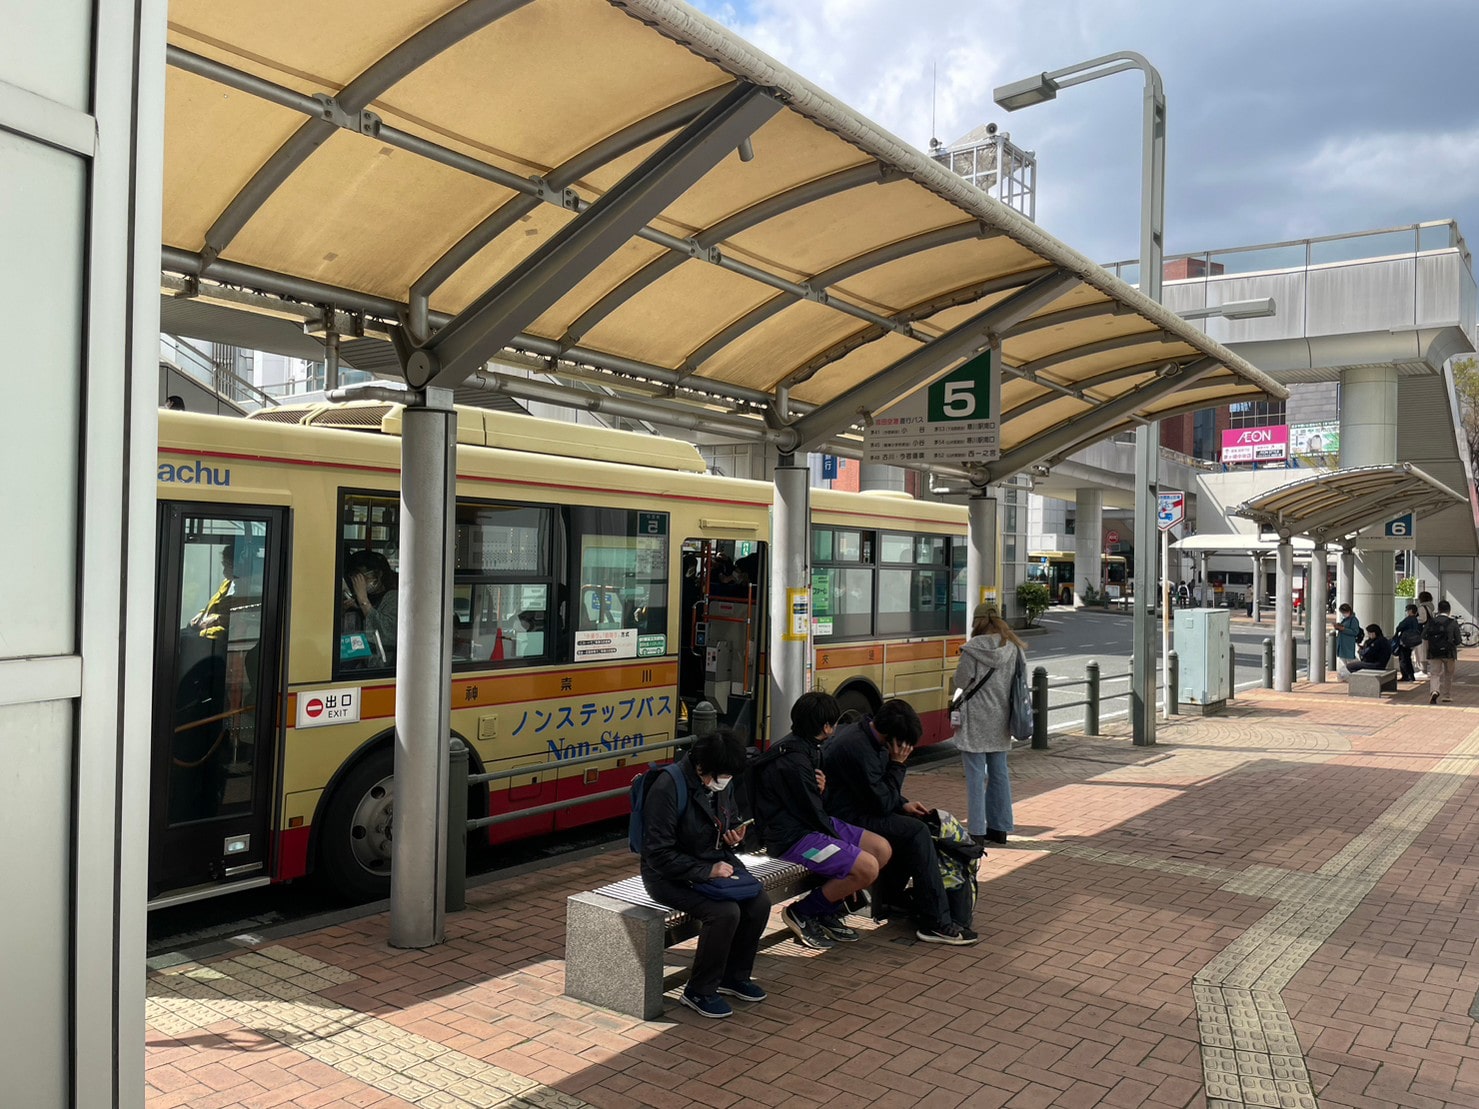 Apple GYM（アップルジム）イオン茅ヶ崎中央店までの道のり（バス）1-3 バス乗り場5番にお乗りください。